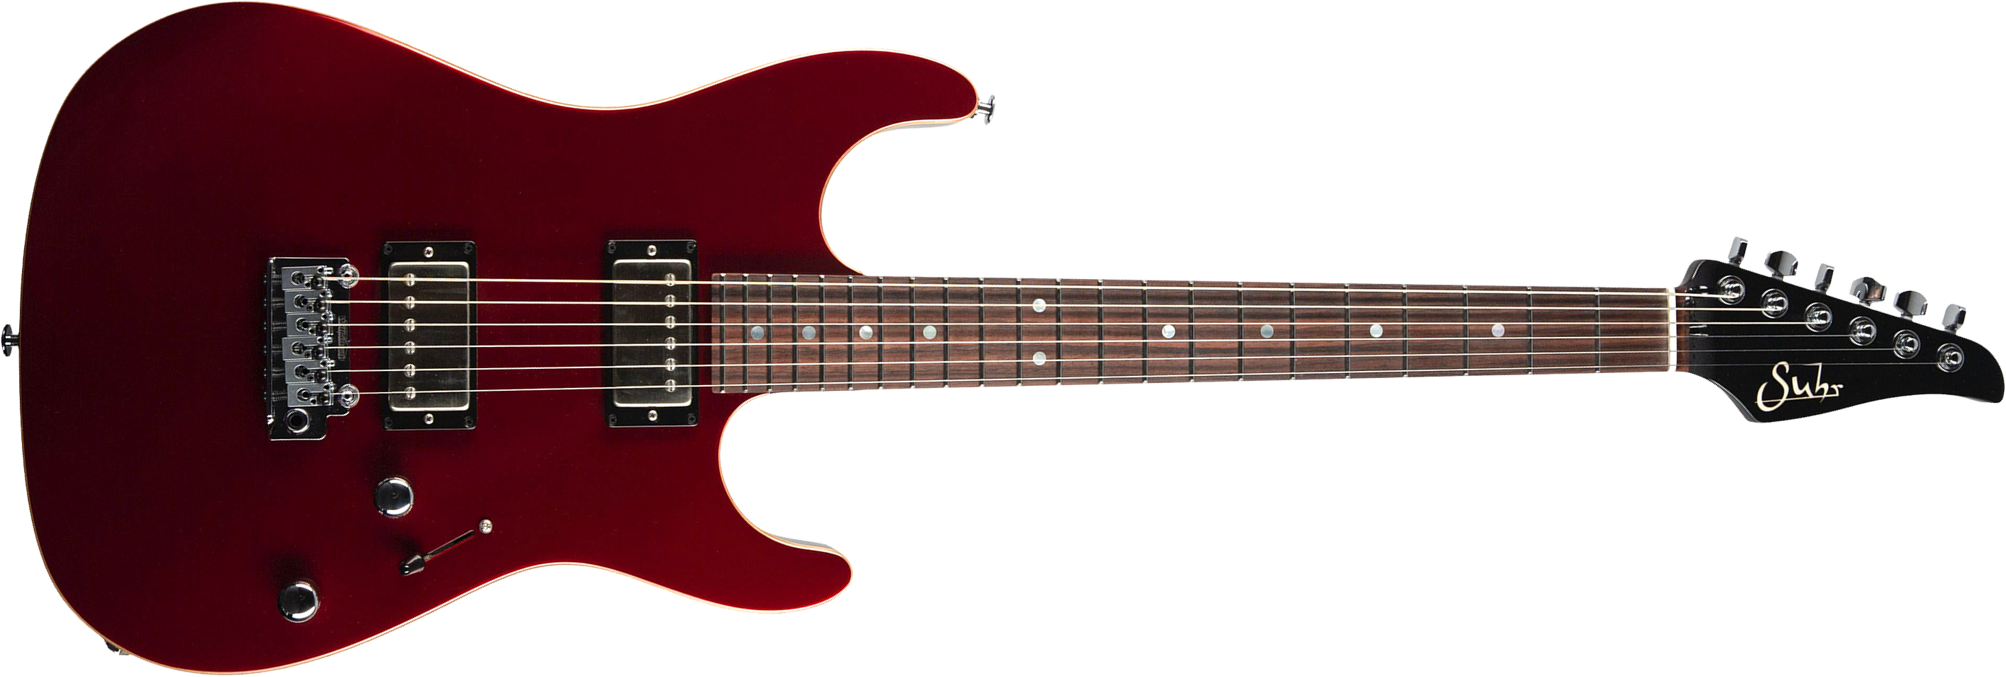 Suhr Pete Thorn Standard 01-sig-0029 Signature 2h Trem Rw - Garnet Red - Guitare Électrique Forme Str - Main picture